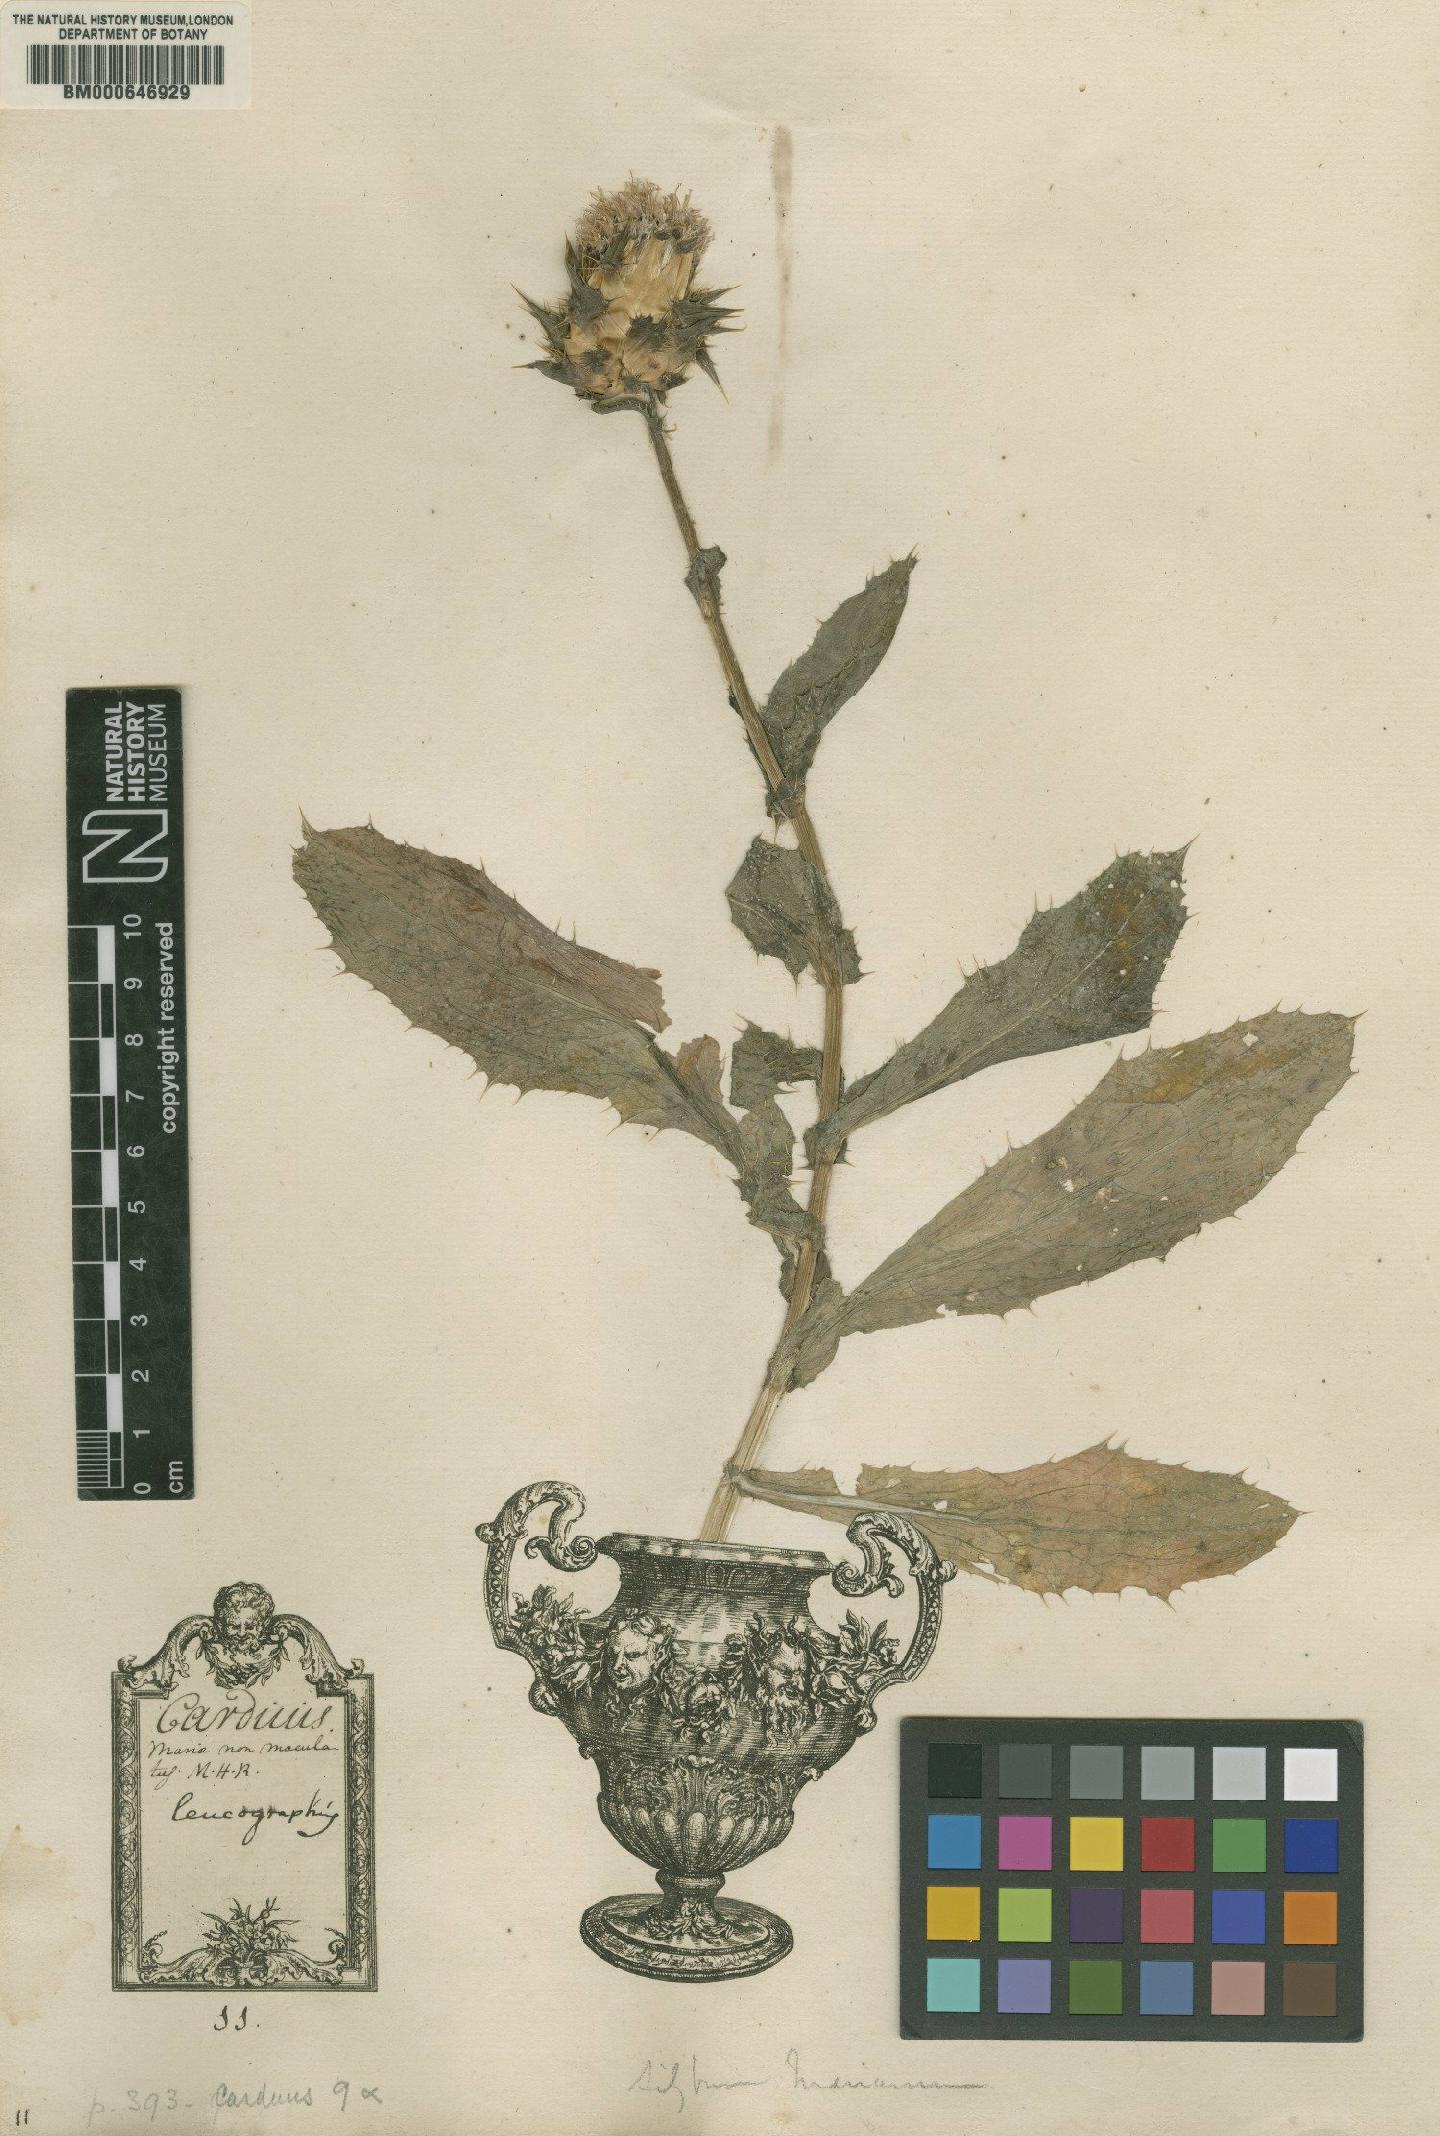 To NHMUK collection (Carduus marianus L.; Original material; NHMUK:ecatalogue:4703572)